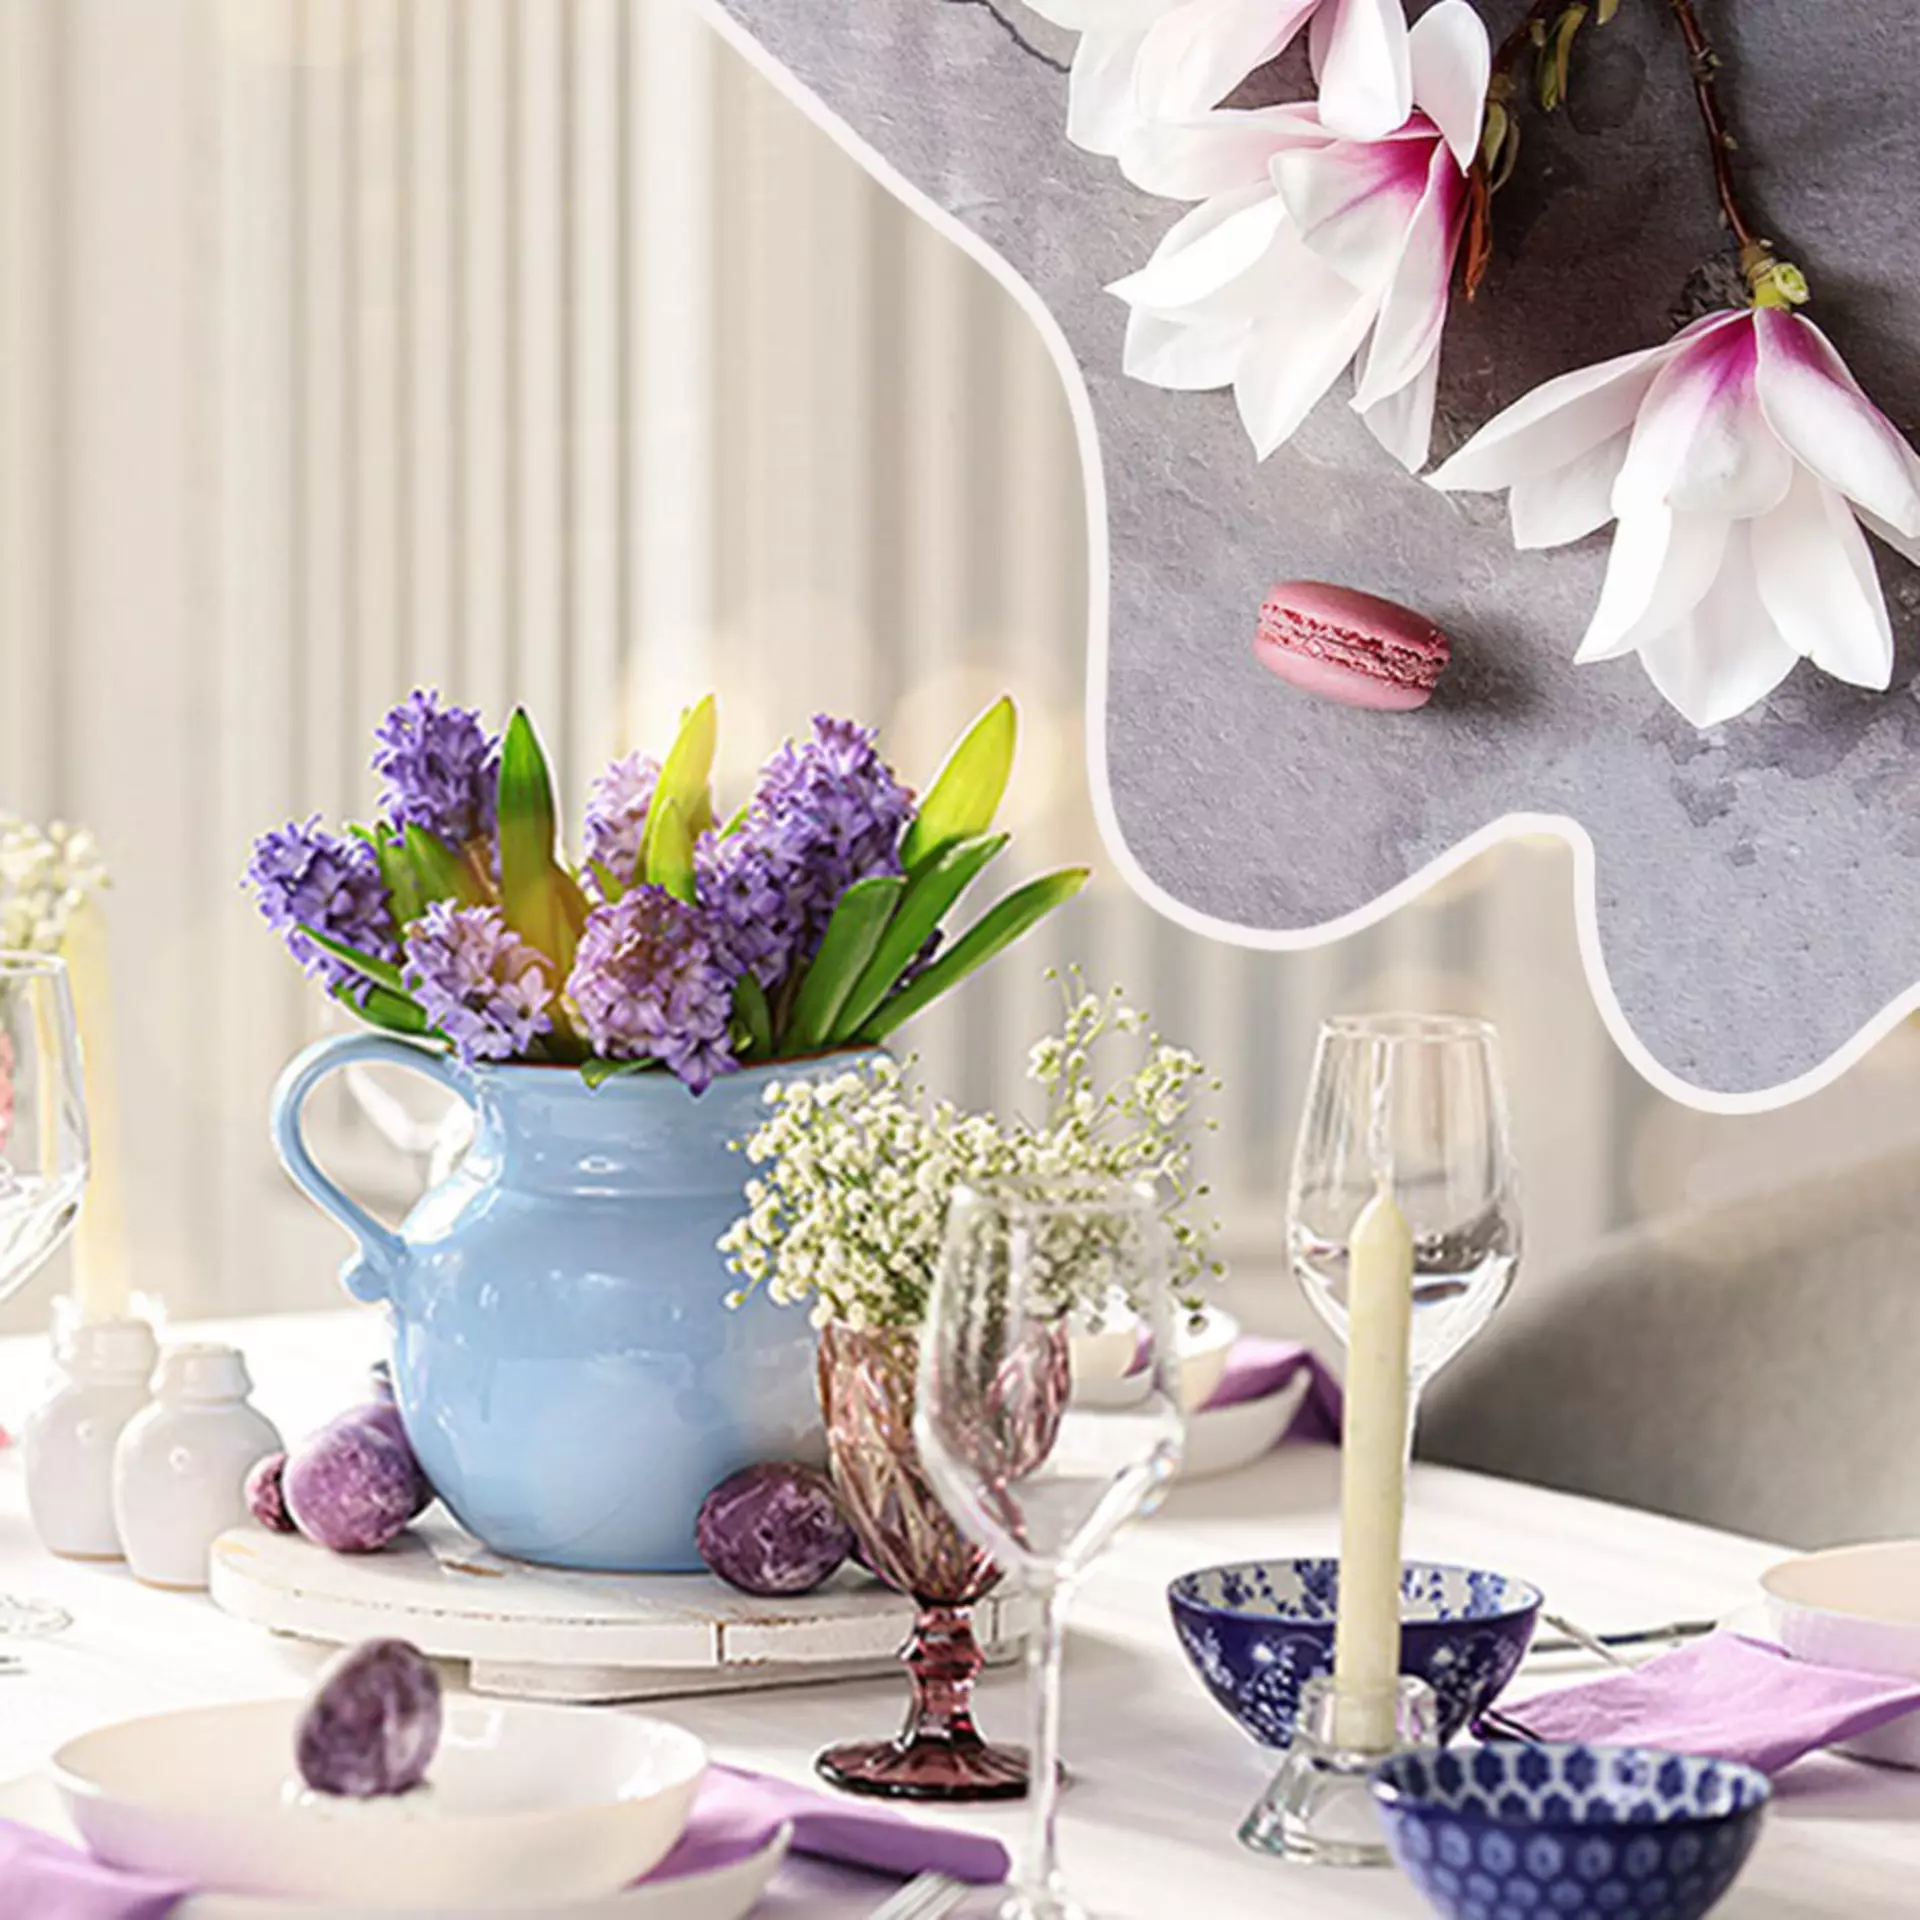 Entdecken Sie die Tischdeko für den Frühling, beim Möbel Inhofer!